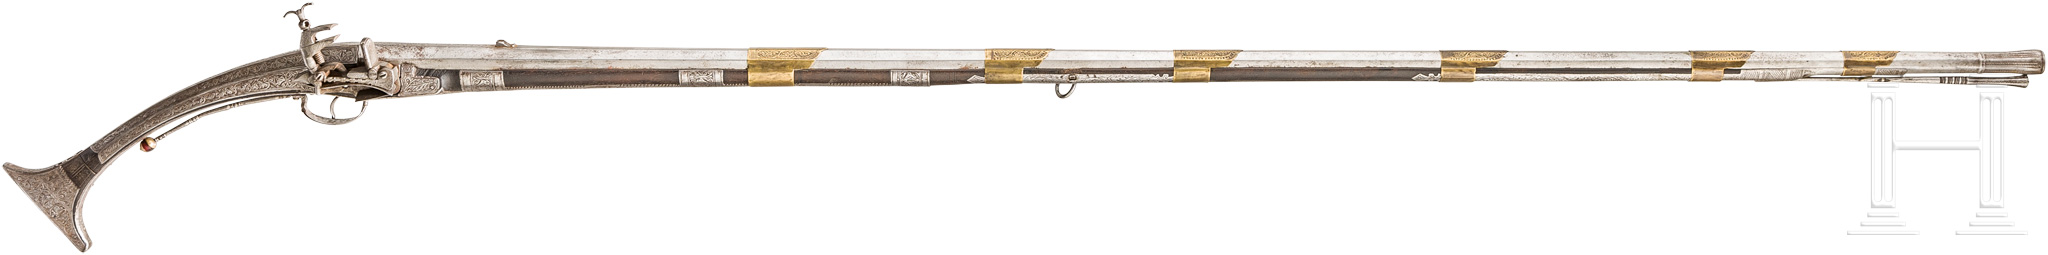 Miqueletgewehr, Albanien, um 1800Schlanker, leicht konischer Achtkantlauf im Kaliber 16 mm mit